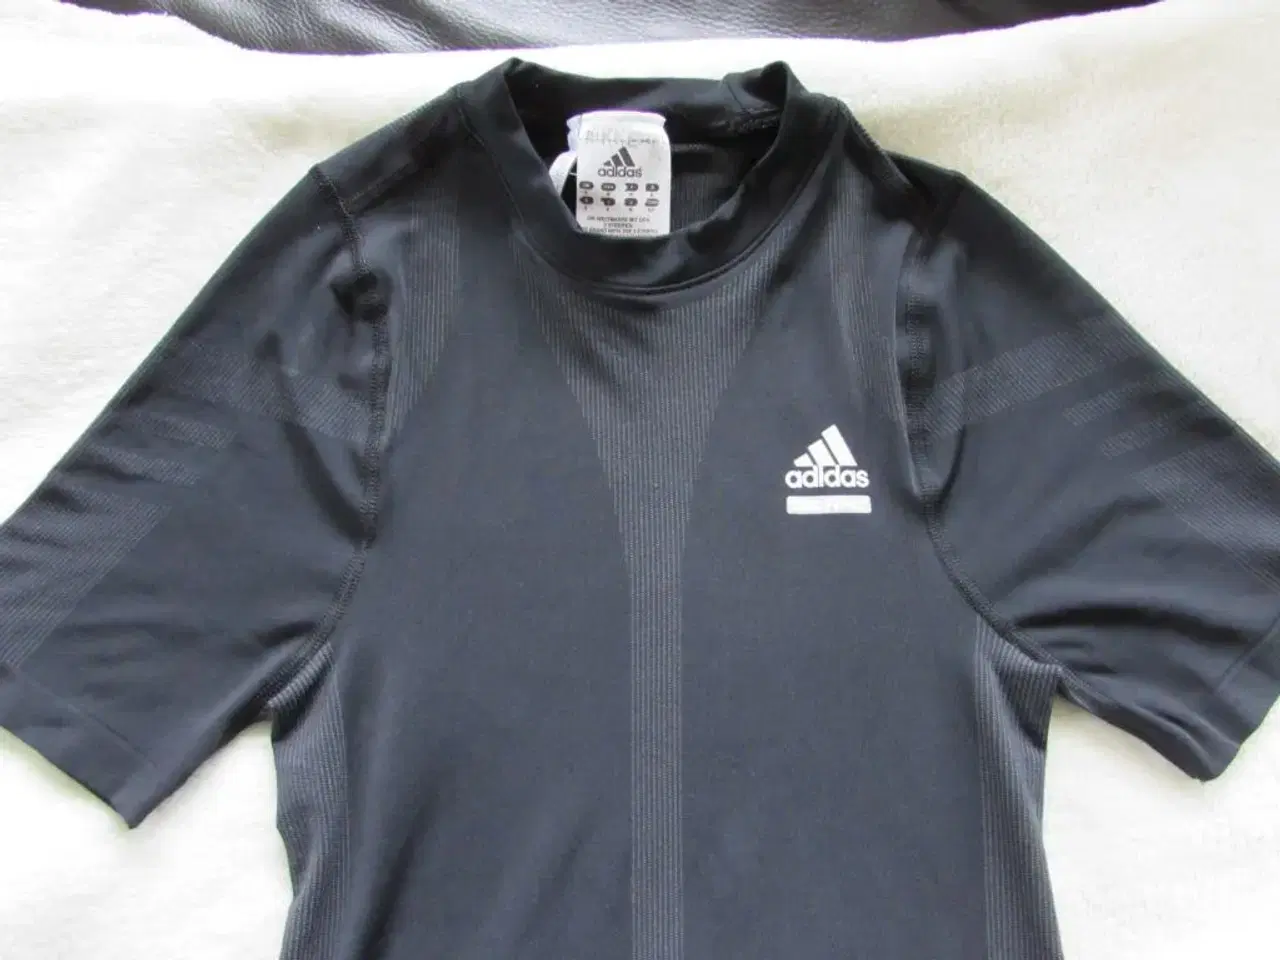 Billede 2 - Adidas løbe(under)trøje